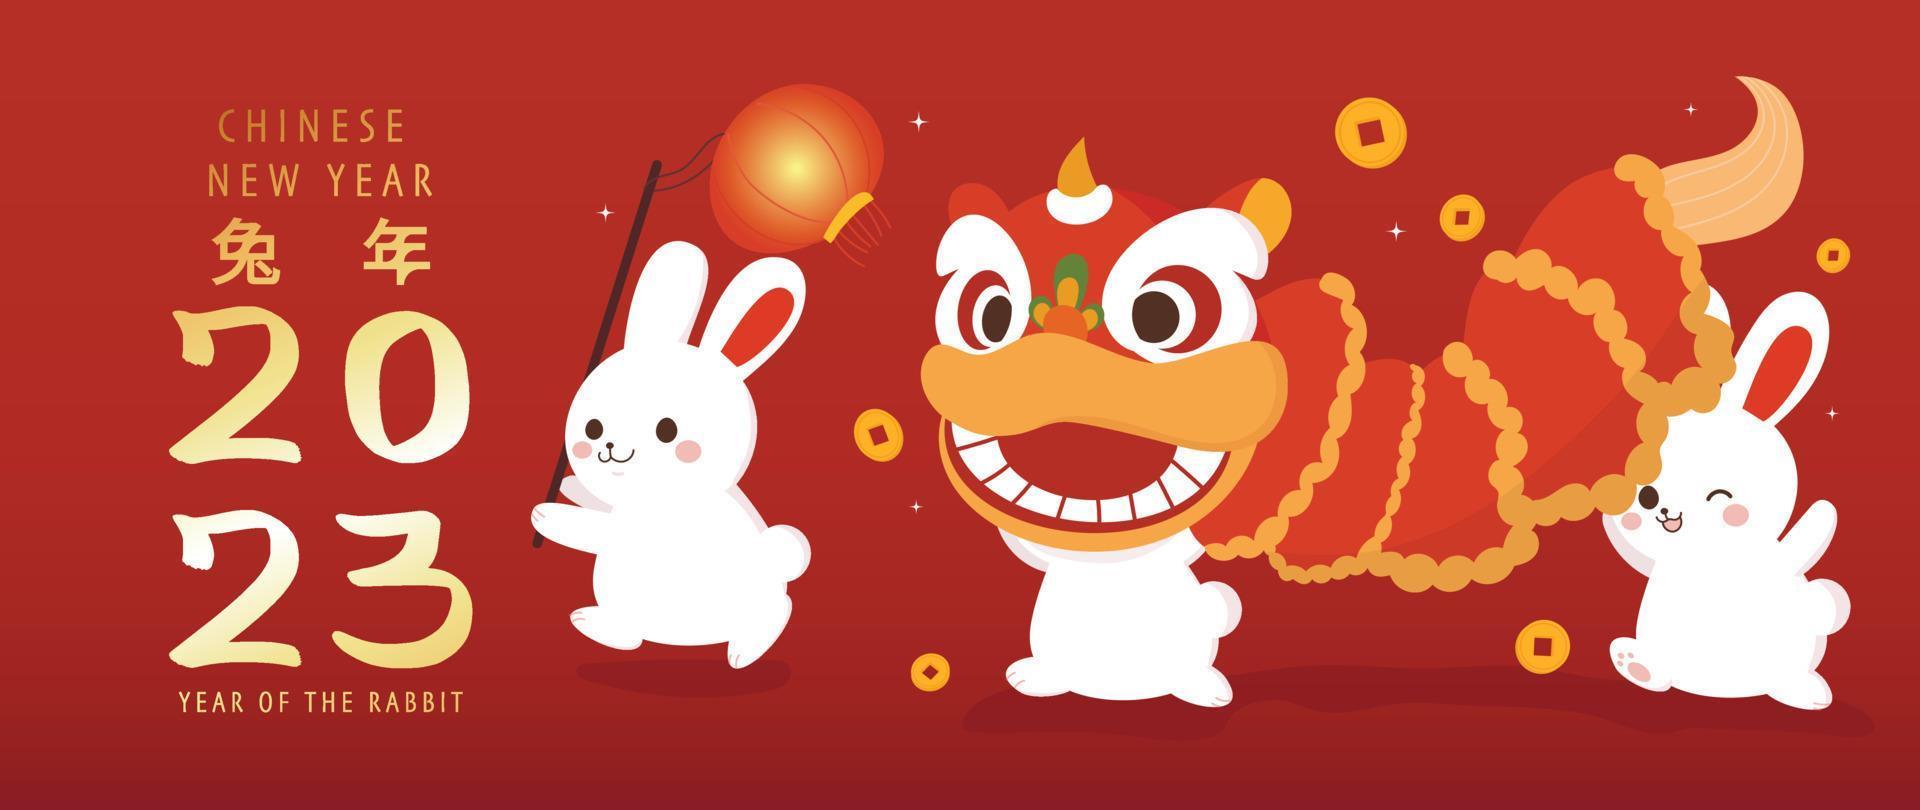 nouvel an chinois du lapin 2023 vecteur de fond de luxe. de jolis lapins blancs jouent avec la danse du lion, la lanterne et les pièces chinoises sur fond rouge. illustration de conception pour papier peint, carte, affiche.